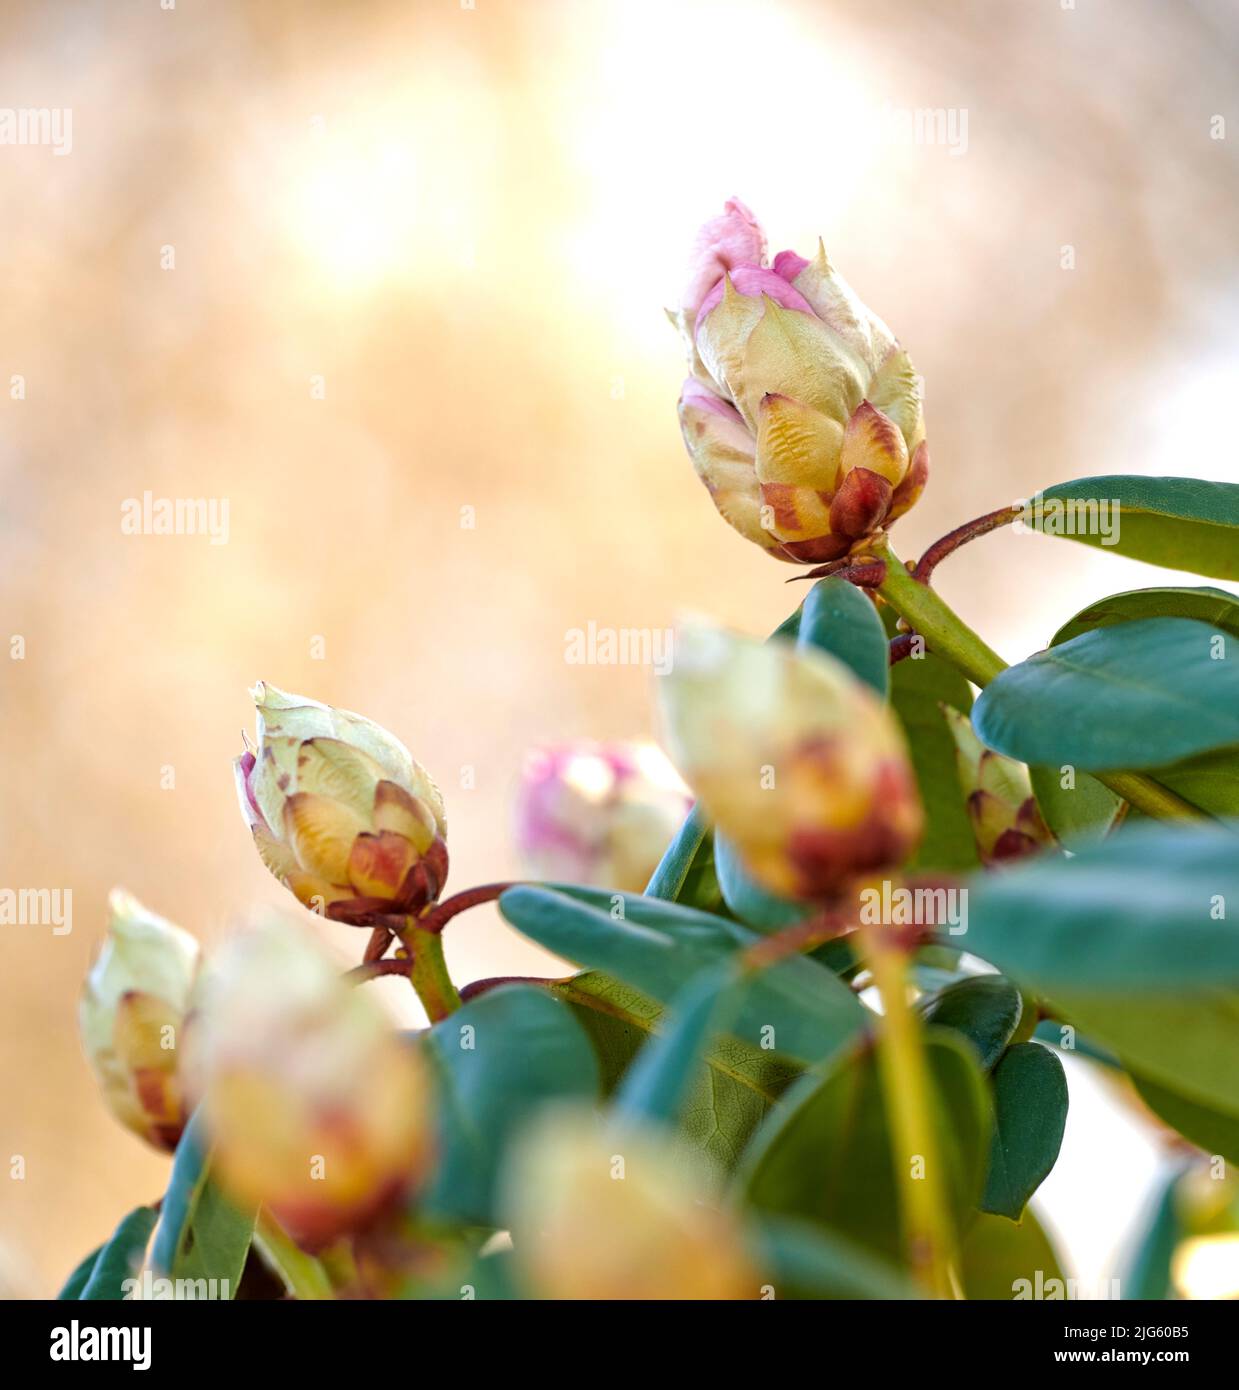 Le Rhododendron est un genre de 1 024 espèces de plantes ligneuses de la famille des heath, soit à feuilles persistantes, soit à feuilles caduques, et se trouve principalement en Asie, bien qu'il soit Banque D'Images